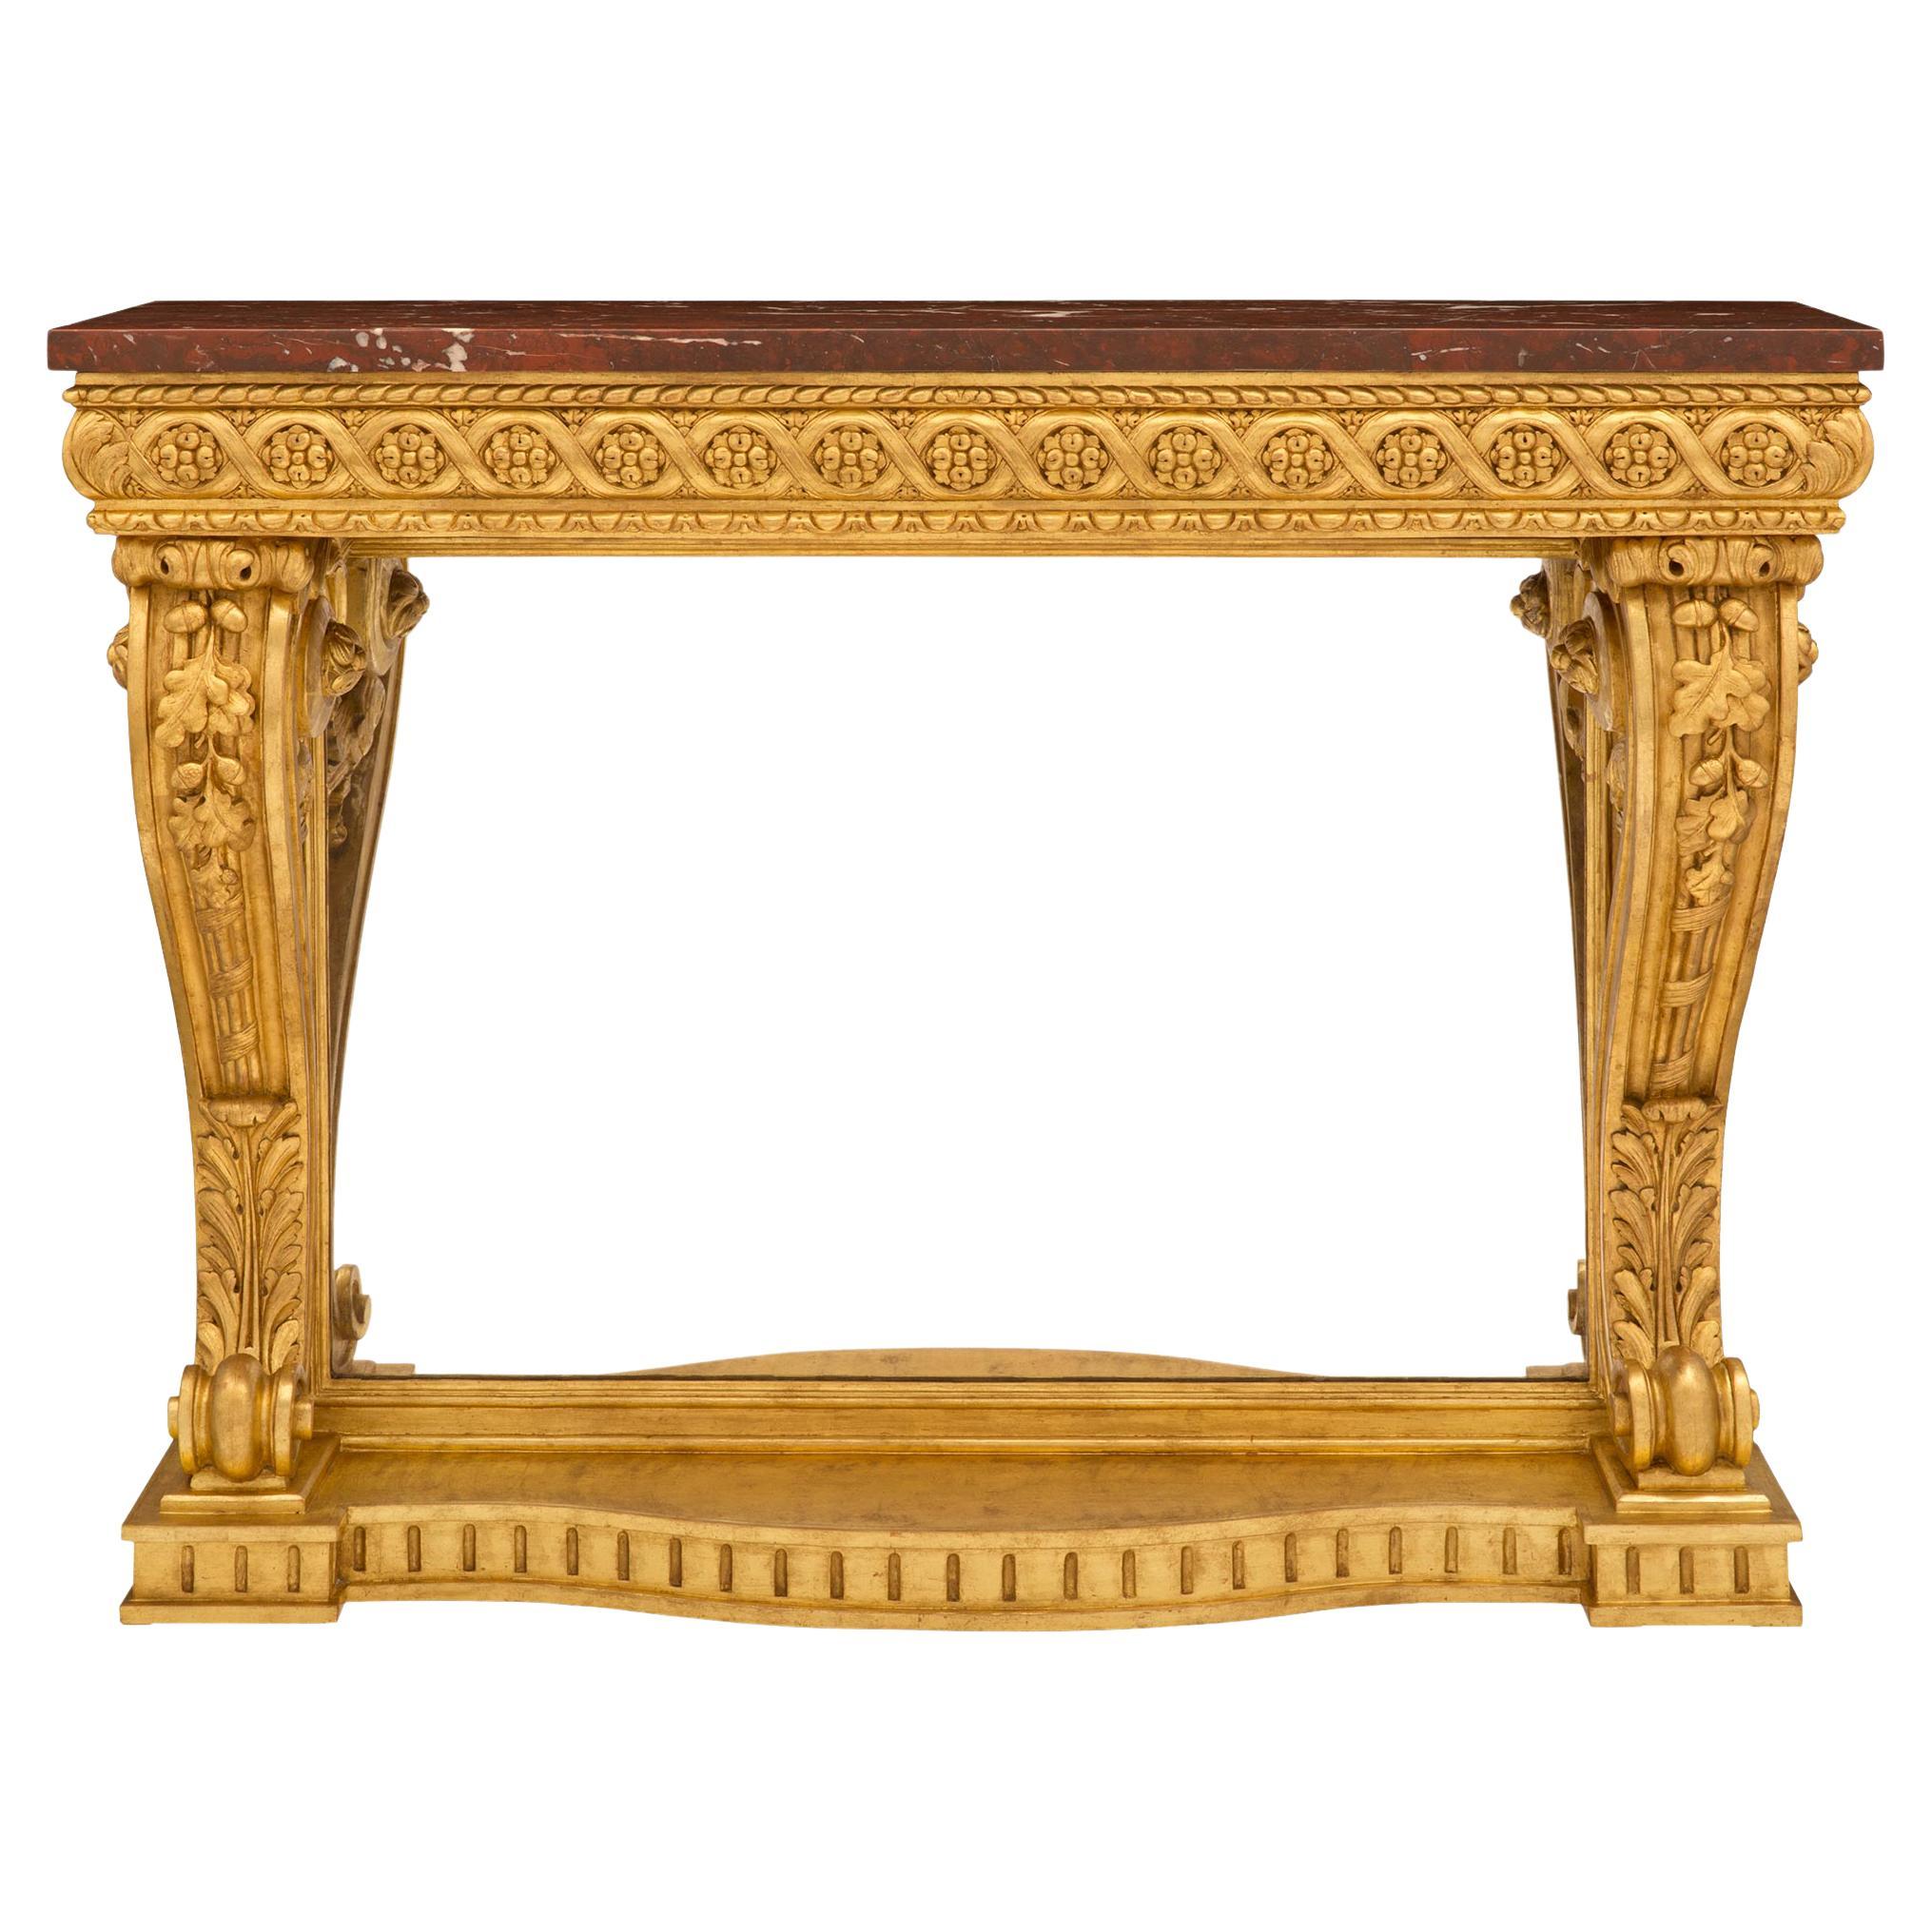 Console en bois doré et marbre rouge griotte de style Louis XVI du 19e siècle